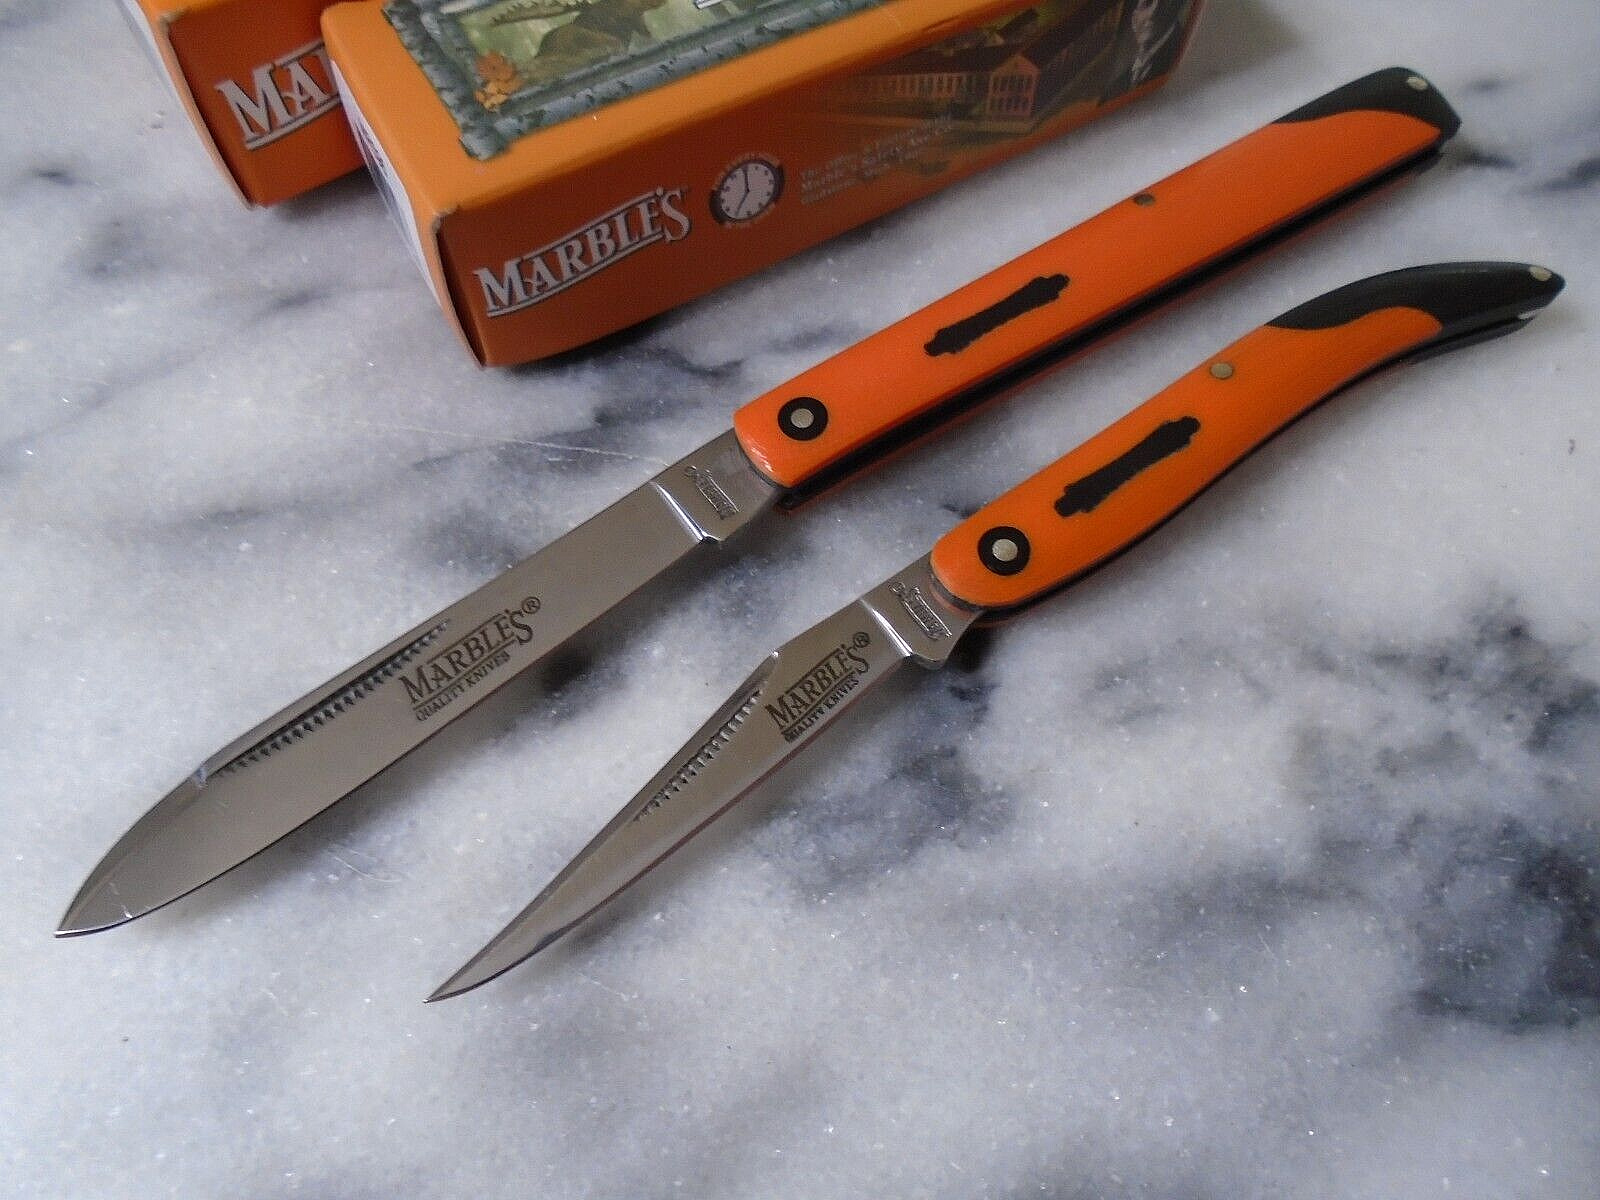 Marbles Toothpick Dr Pocket Knife Set 2 Folding Knives G10 MR594/596 Slipjoints